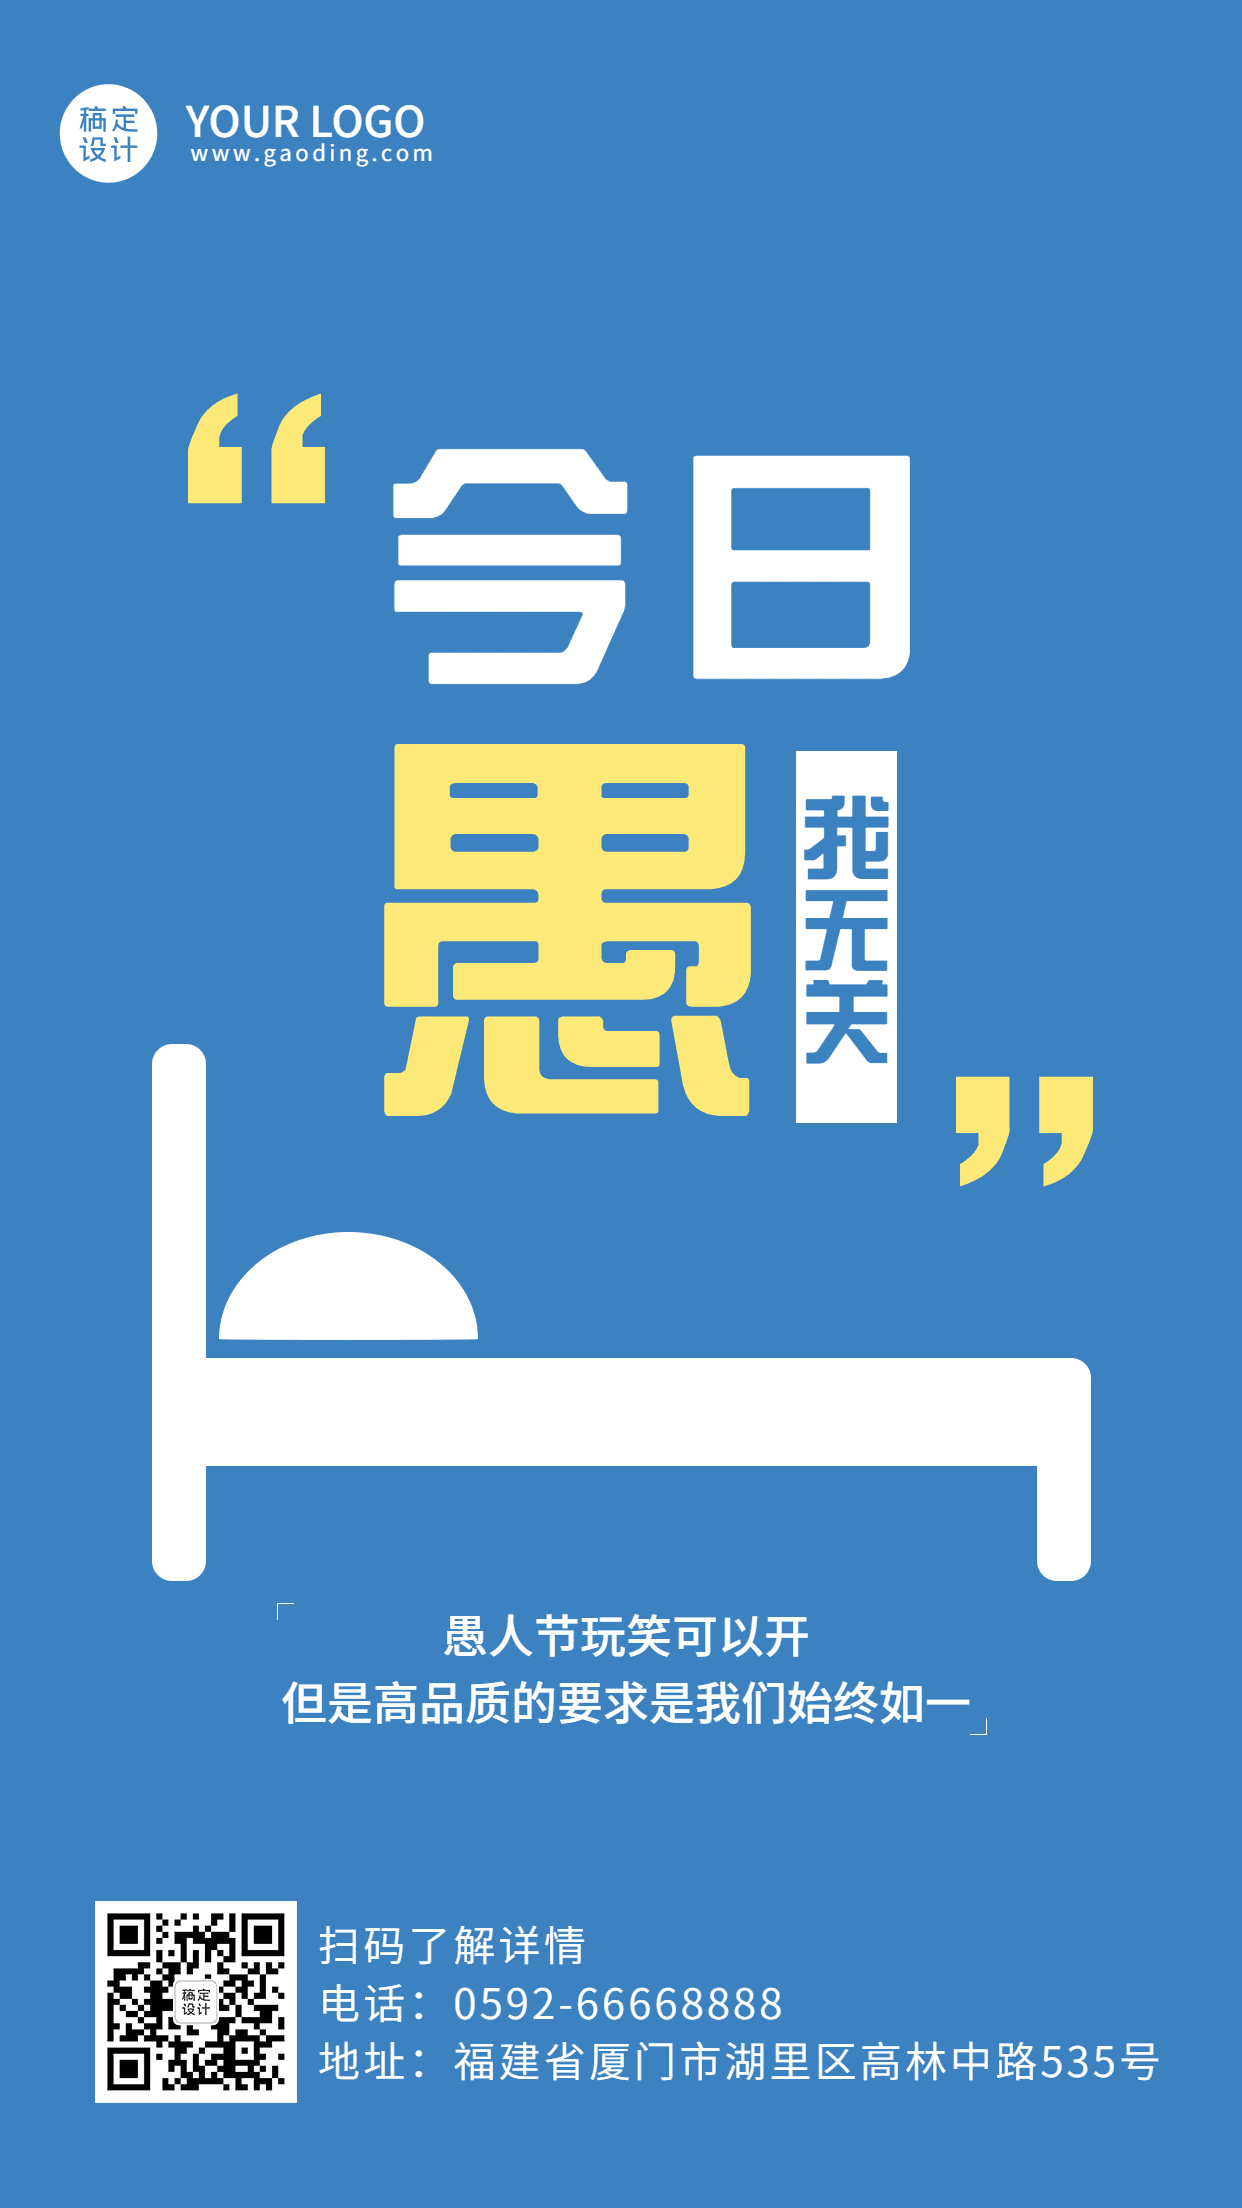 4.1愚人节节日活动宣传手机海报预览效果